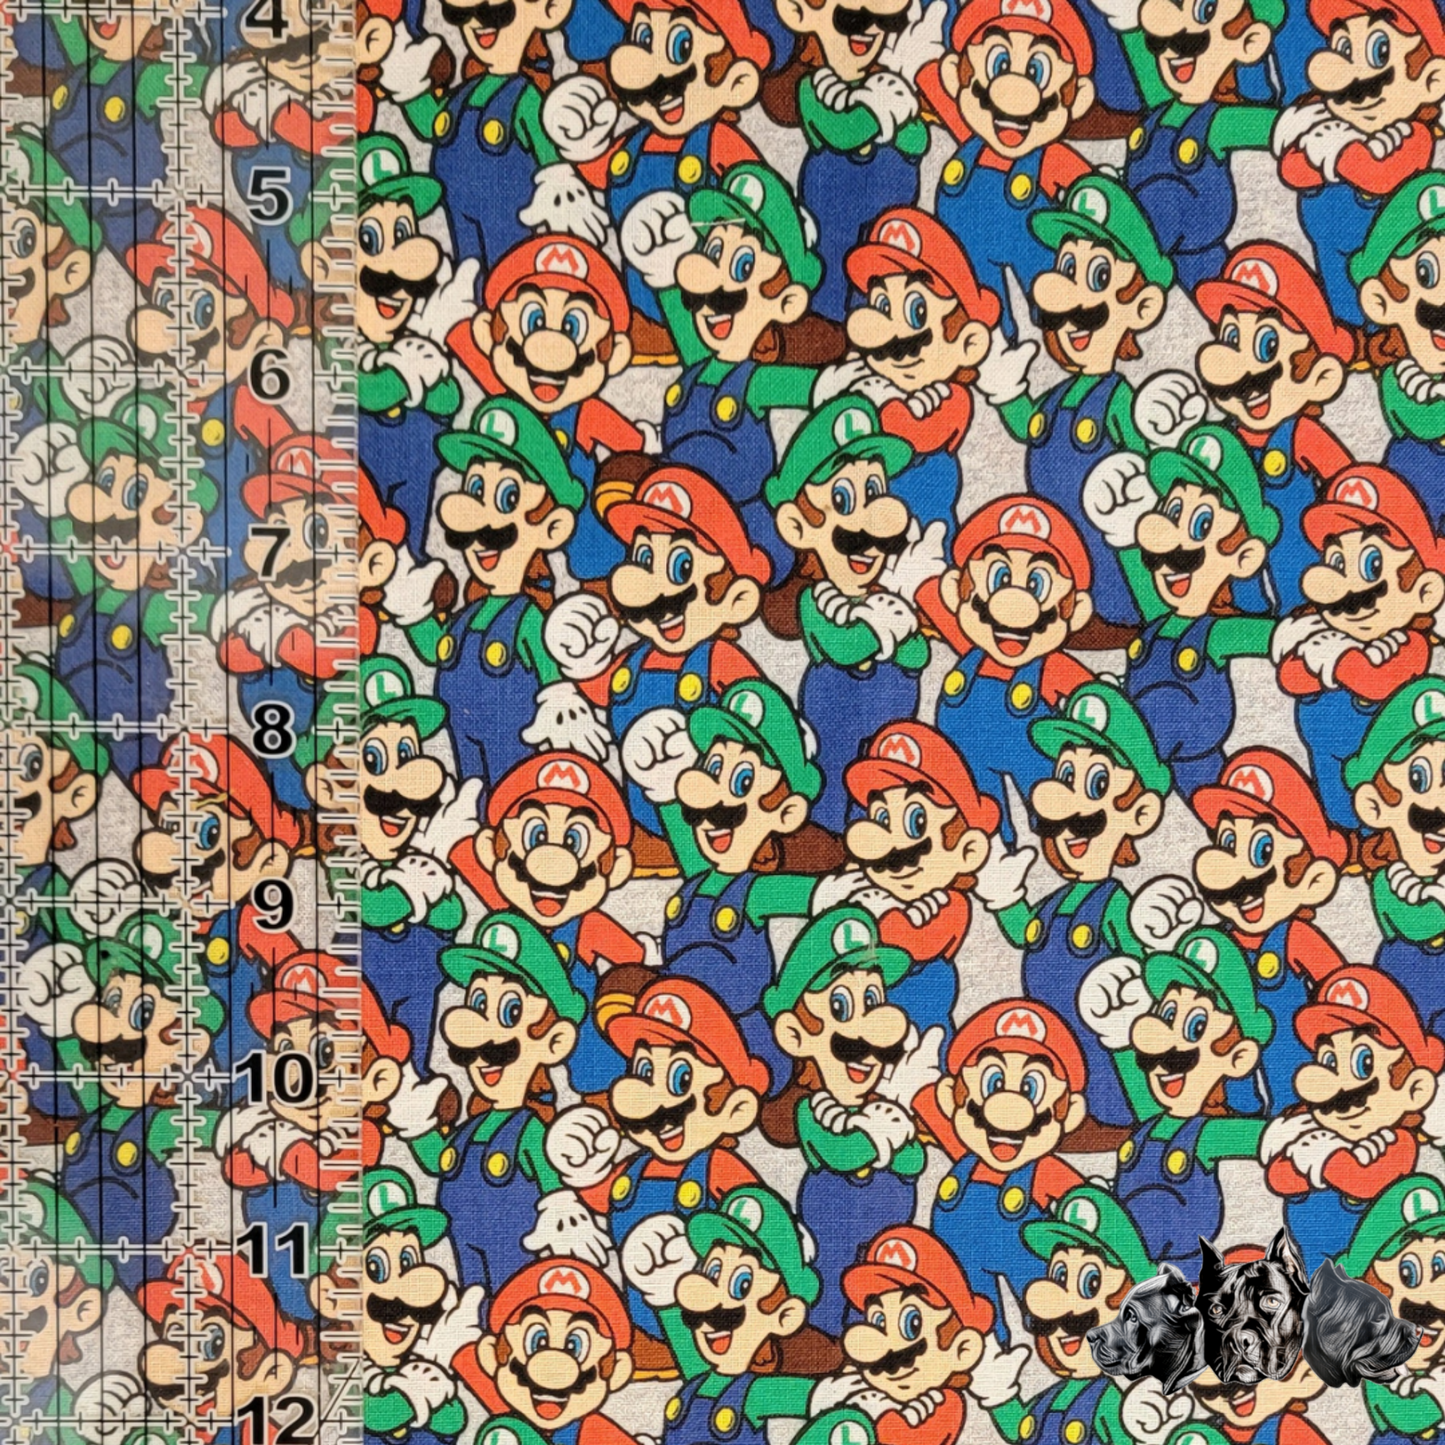 Mario and Luigi Doggy Slip On Bandana